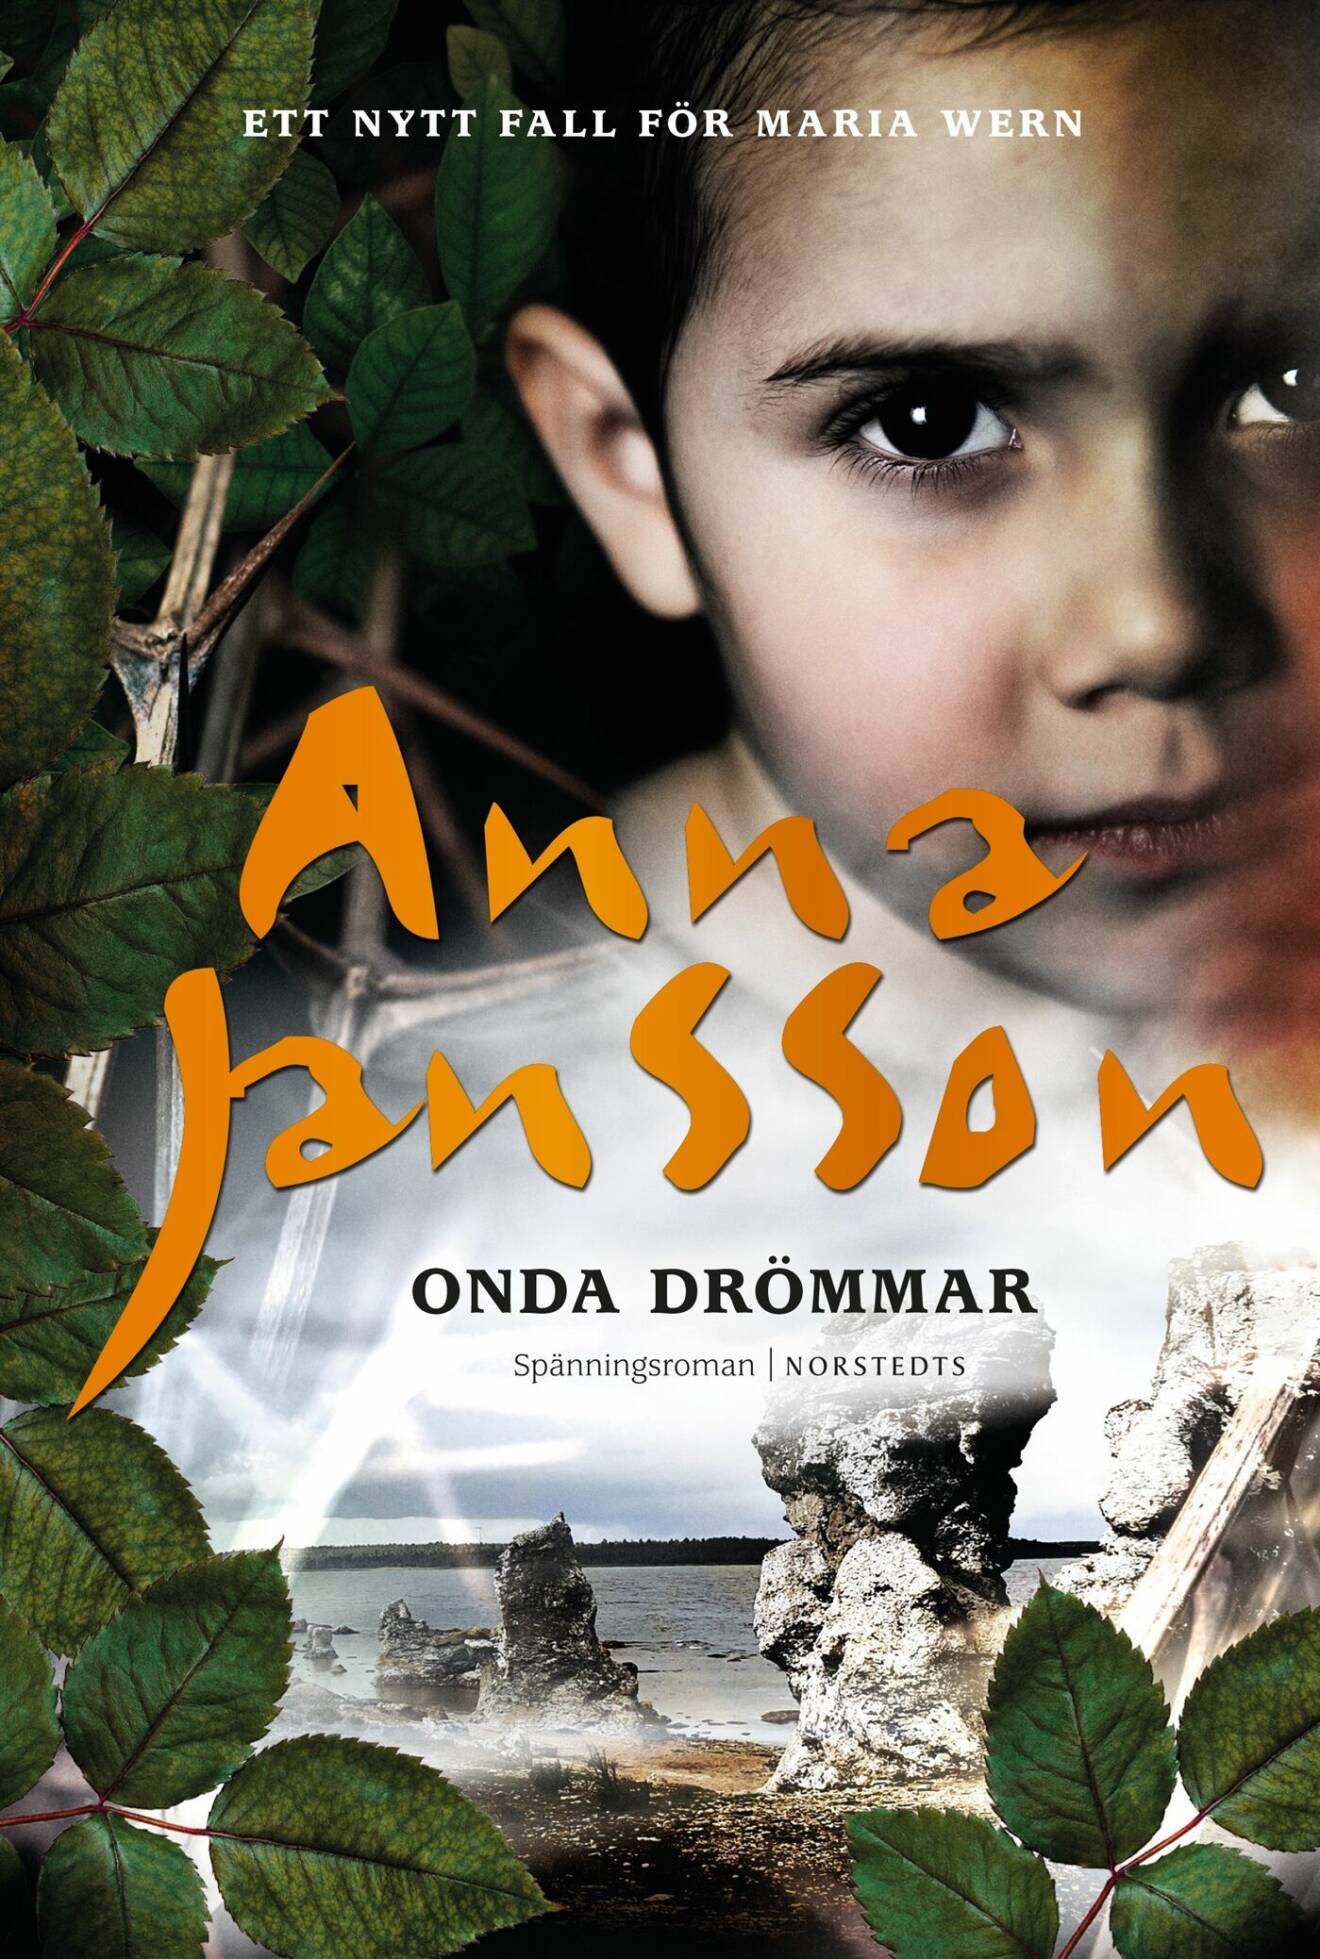 Bokomslag Onda drömmar av Anna Jansson